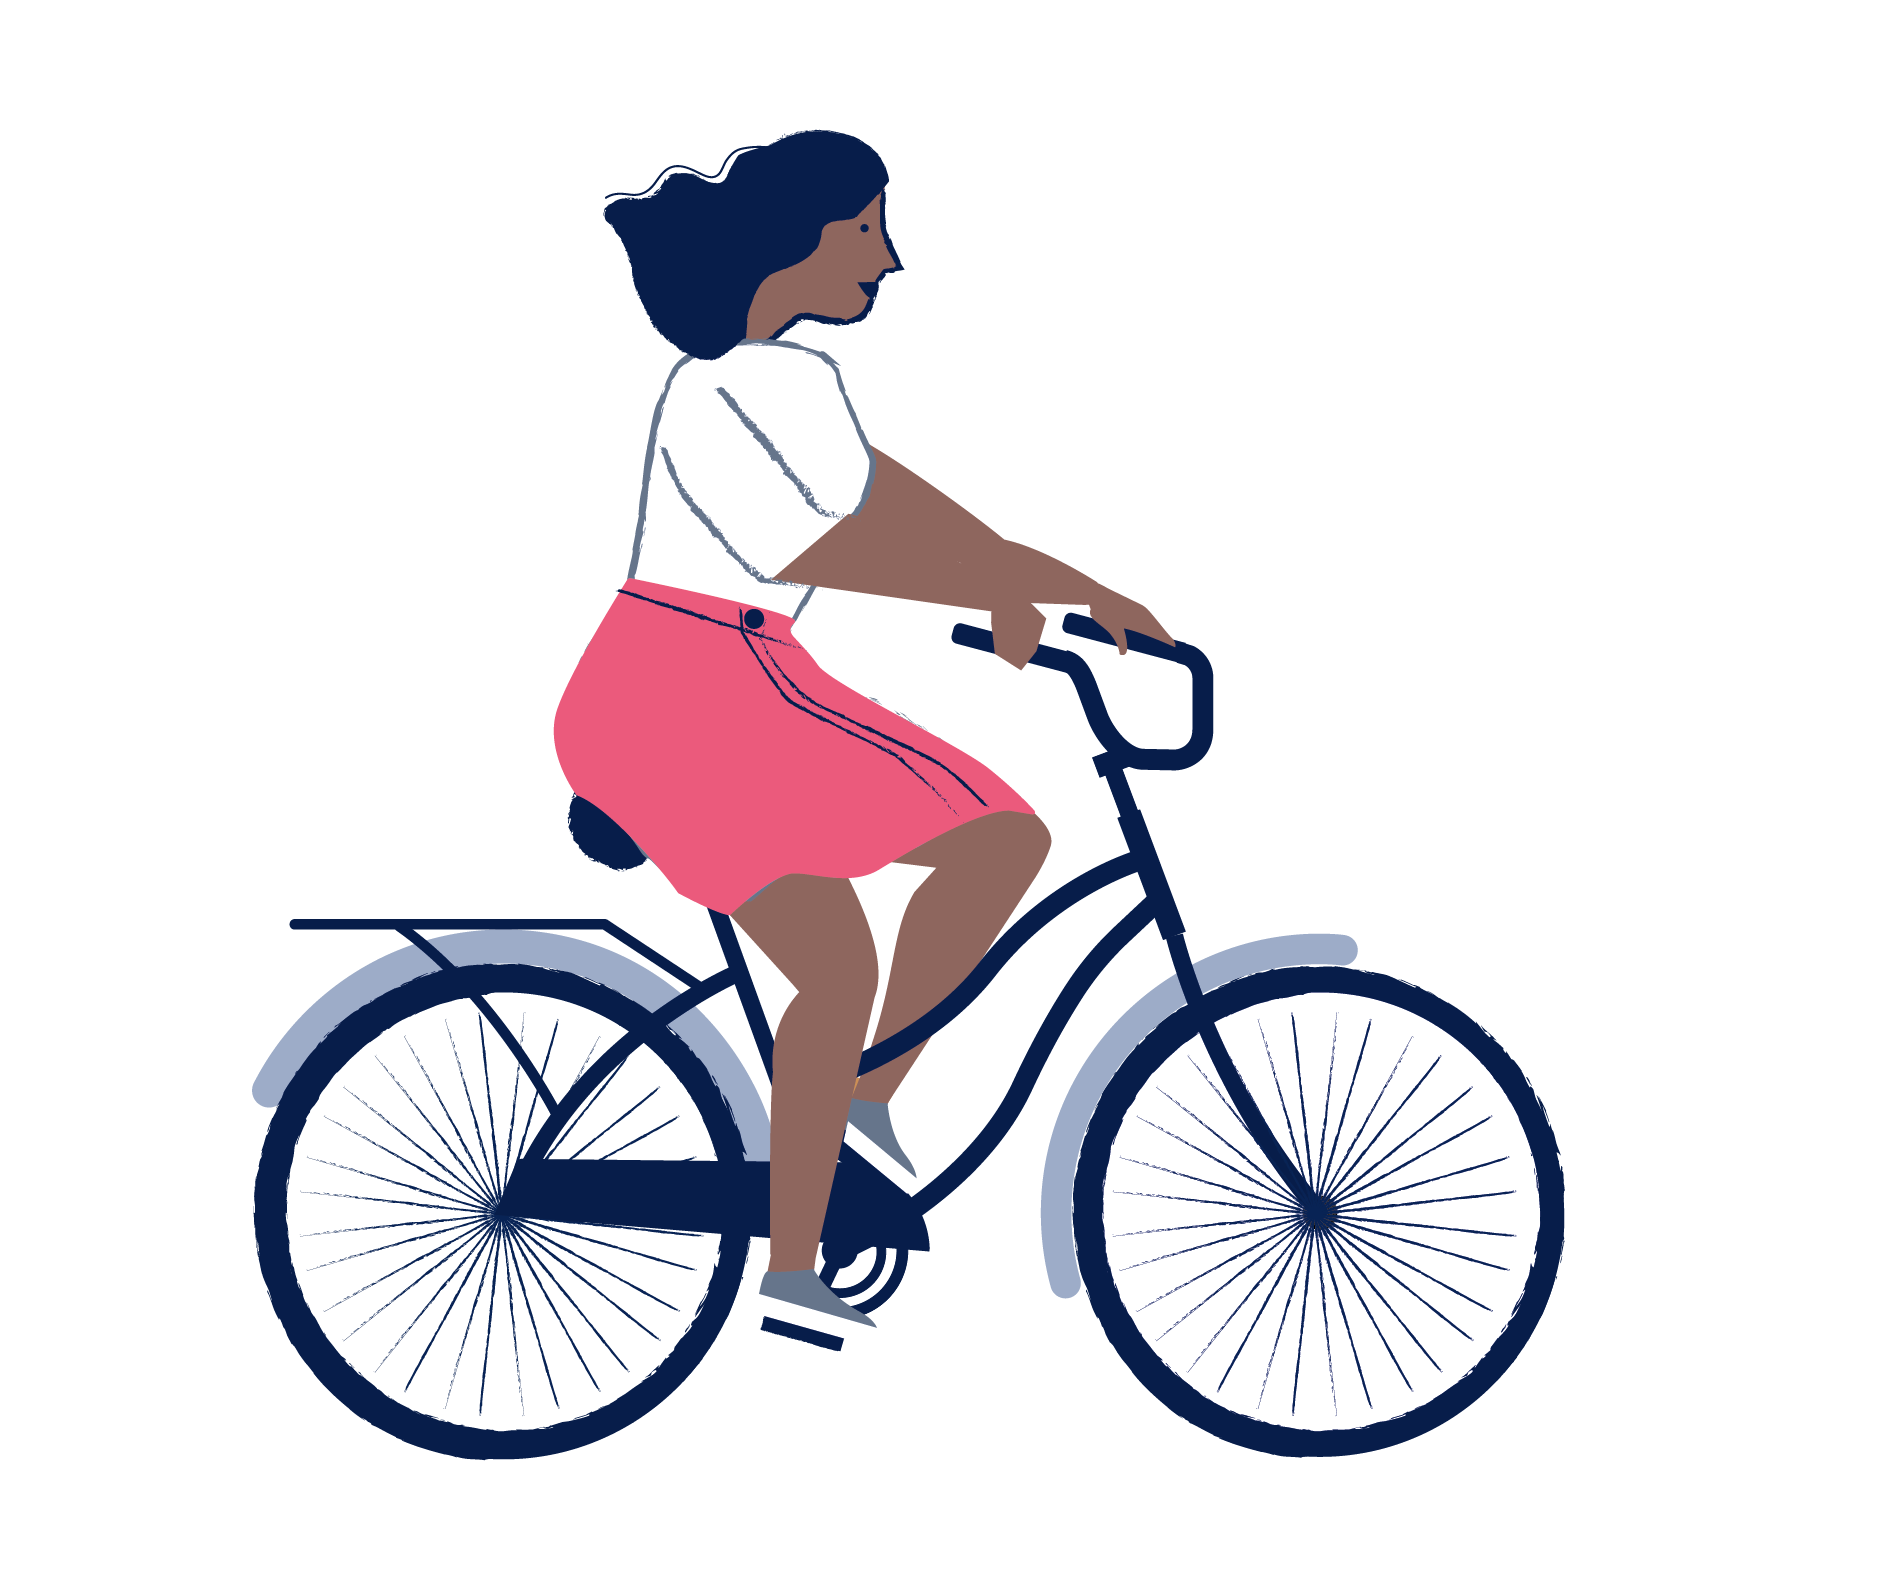 Création d'une illustration de vélo